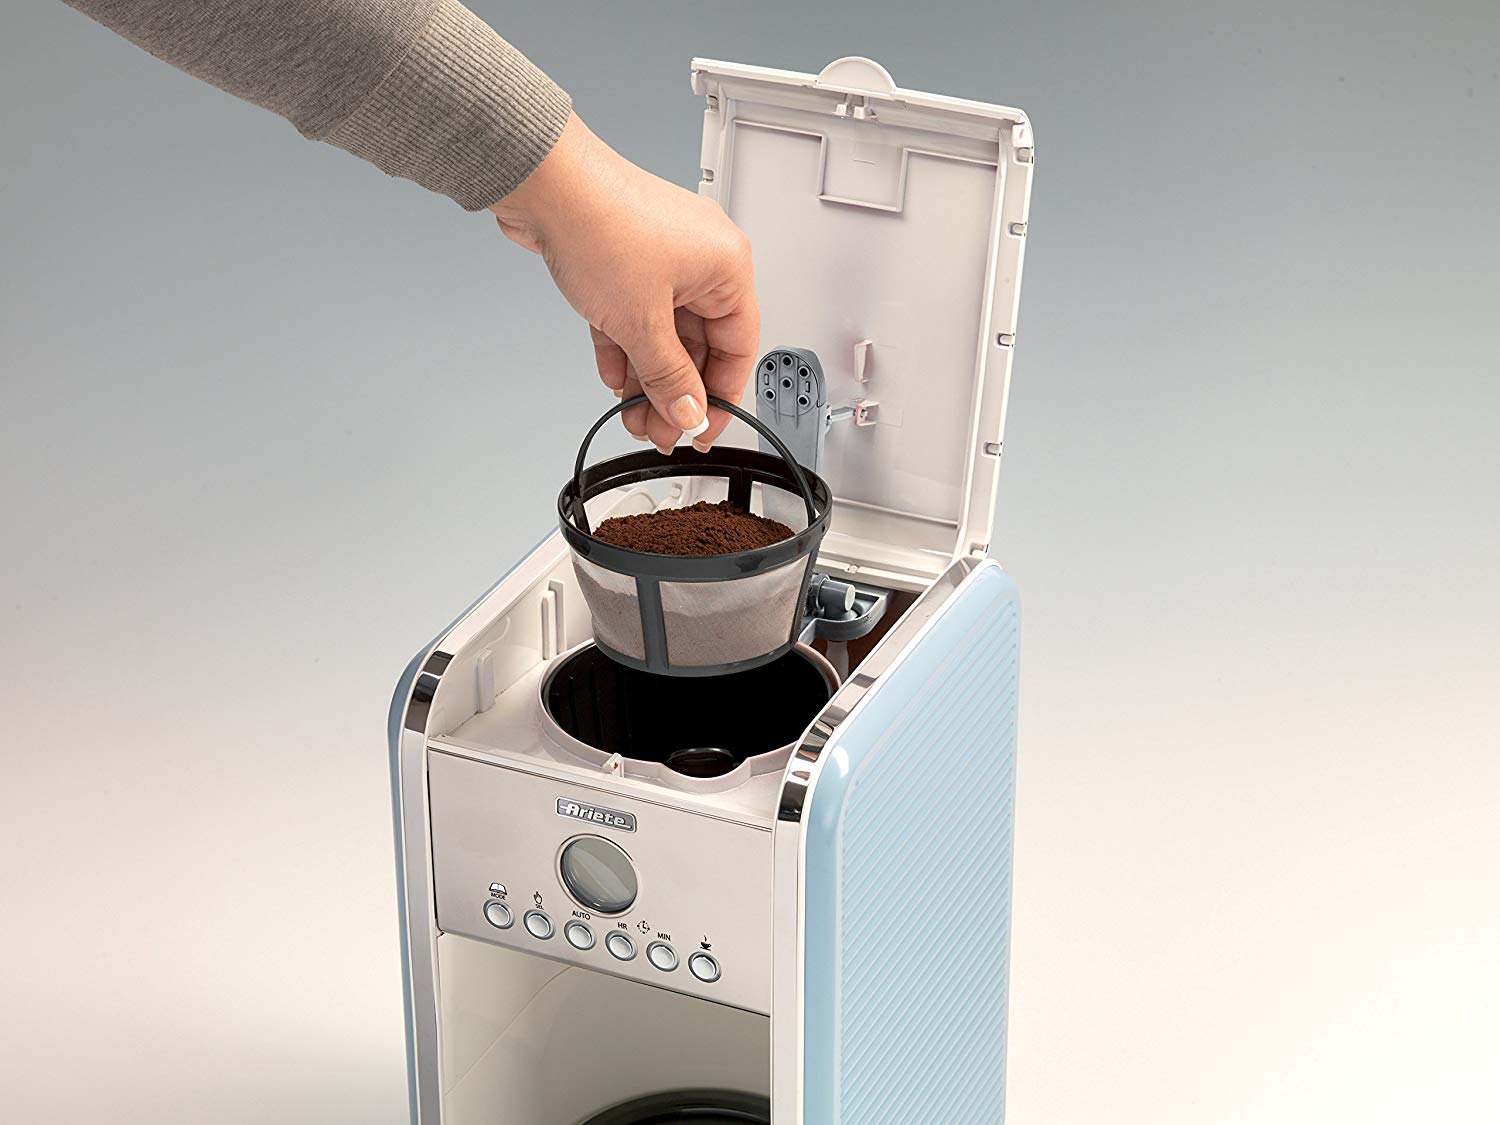 Máy pha cà phê là một trong các sản phẩm chất lượng của Ariete